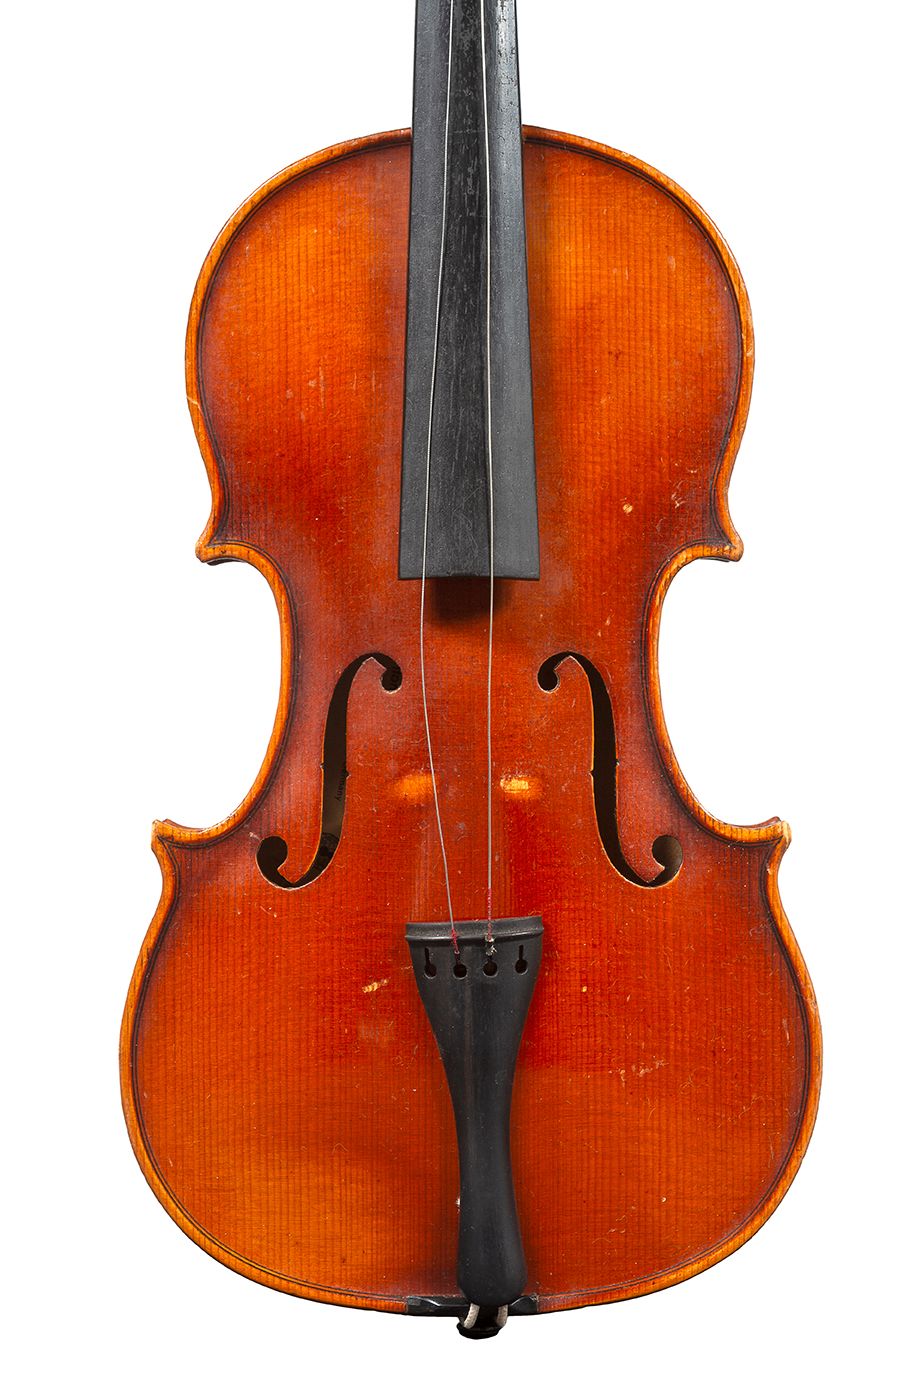 Null 研究小提琴
工业制造
带有斯特拉迪瓦里的复制标签
状况良好 
背面有361毫米